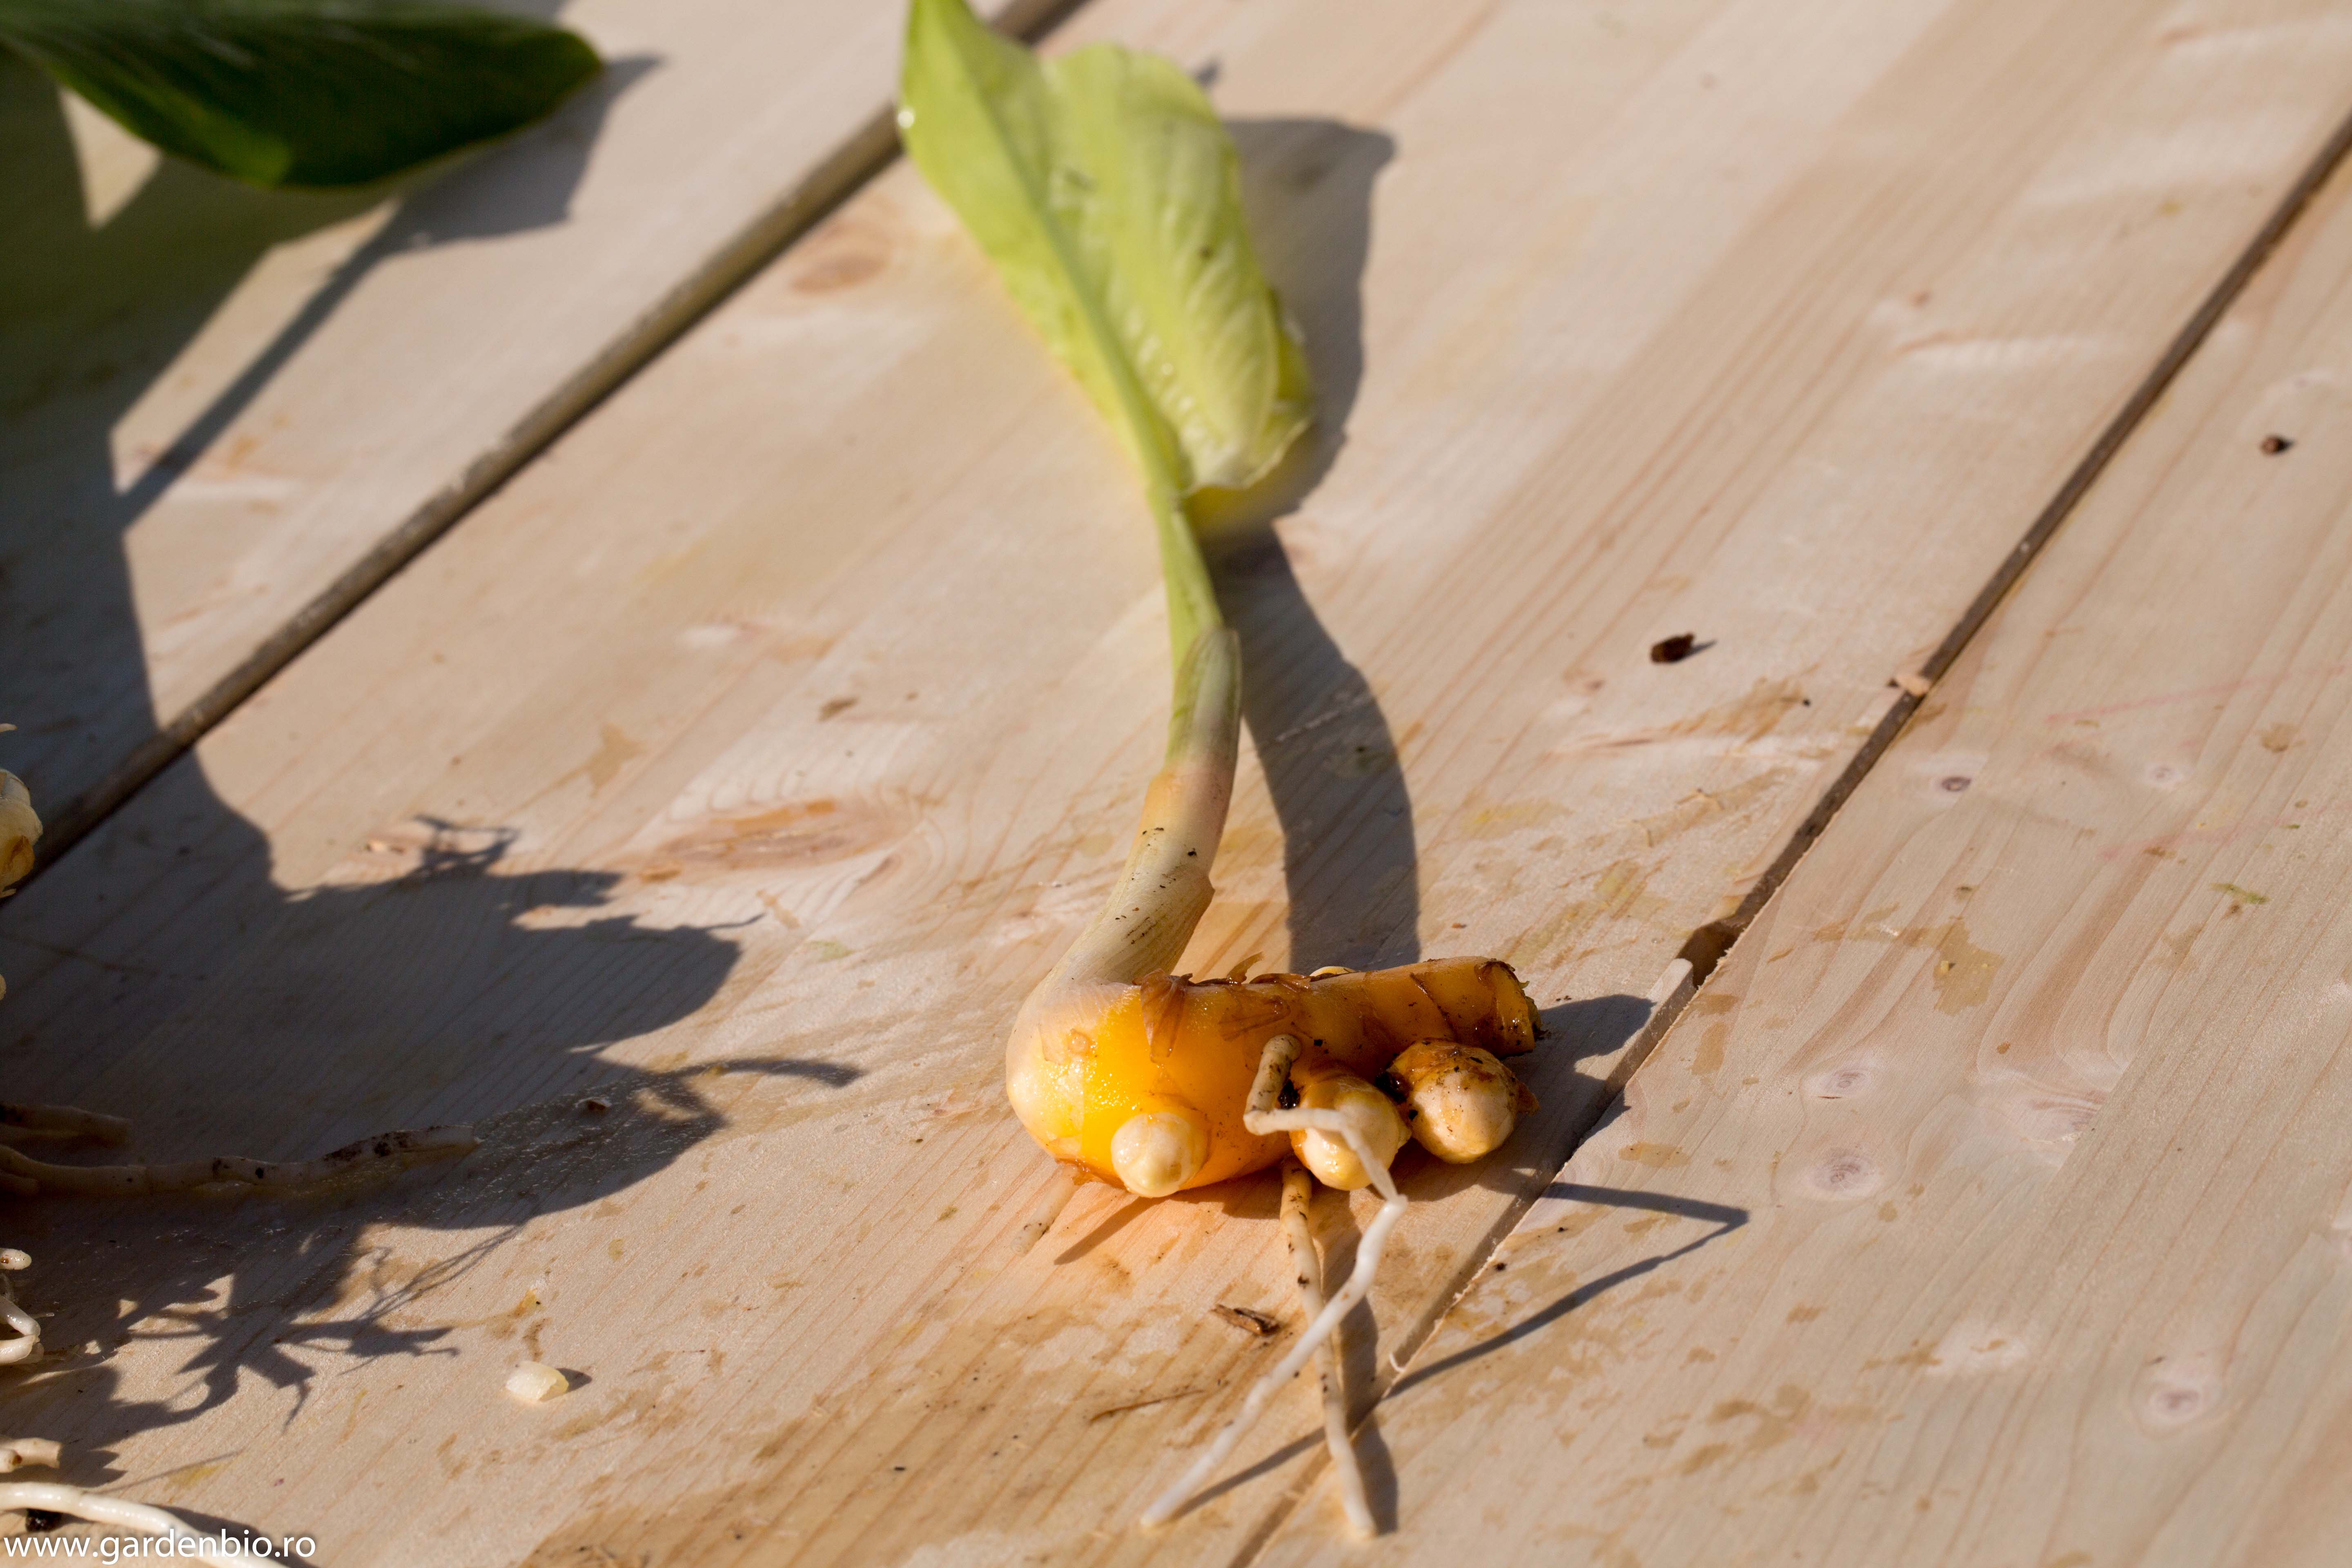 Dintr-un rizom de turmeric se dezvoltă o nouă plantă